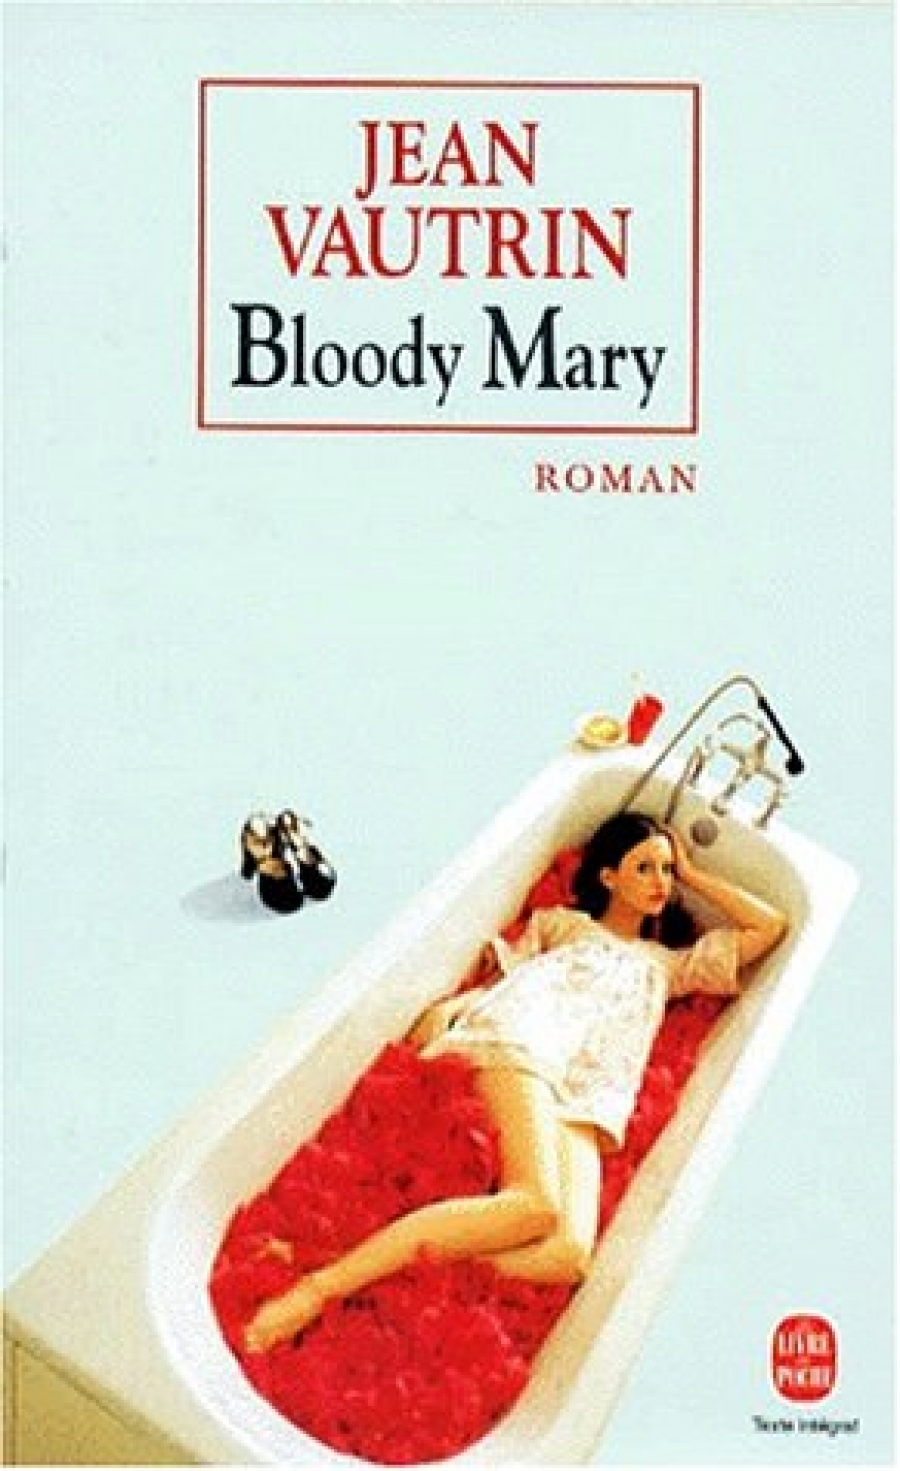 Jean, Vautrin Bloody Mary 